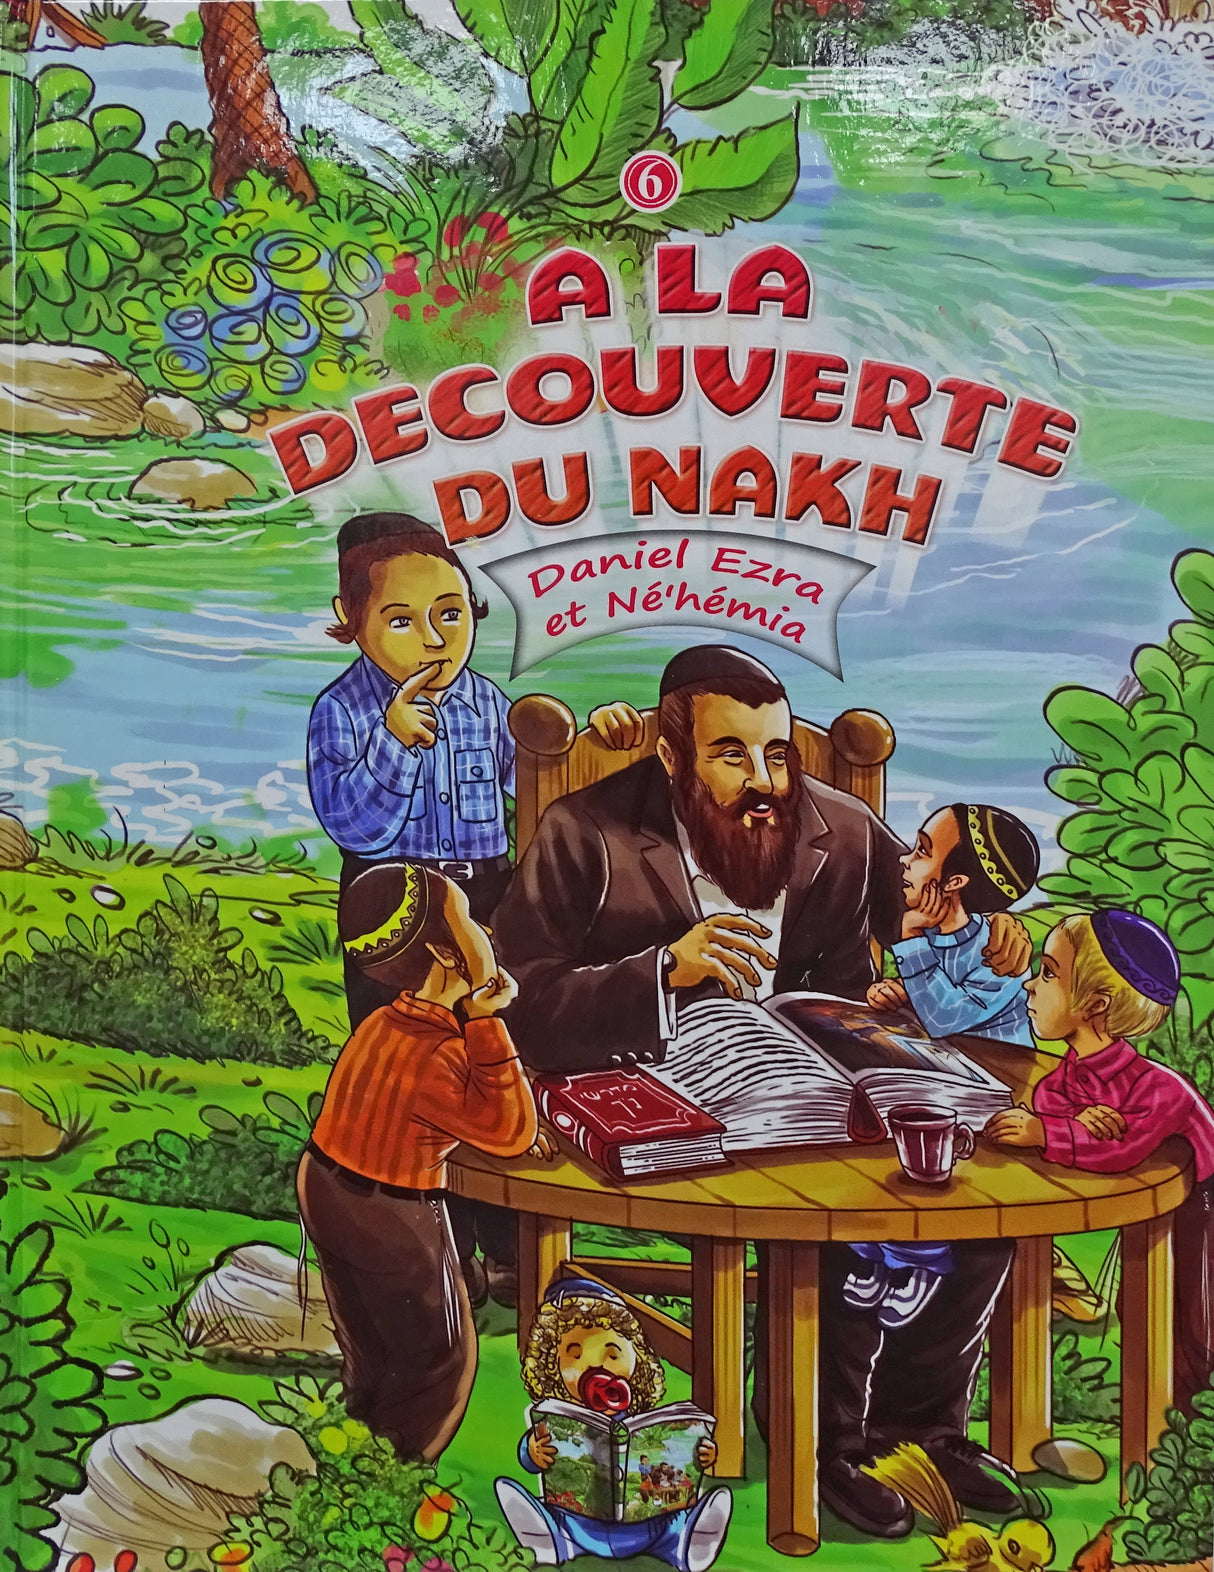 A La Decouverte Du Nakh vol 6